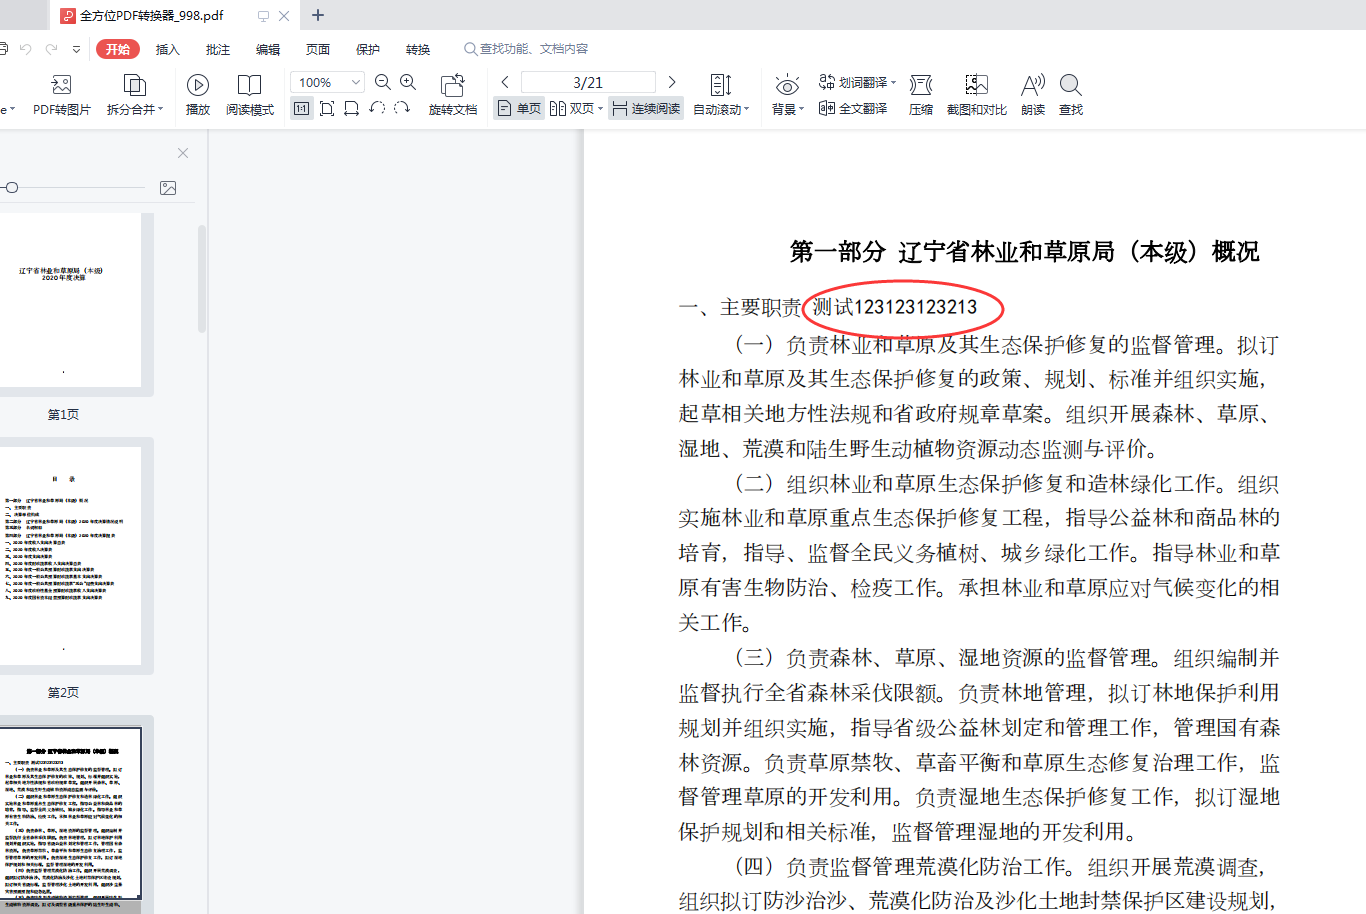 怎么将pdf转换成可以编辑的word文档